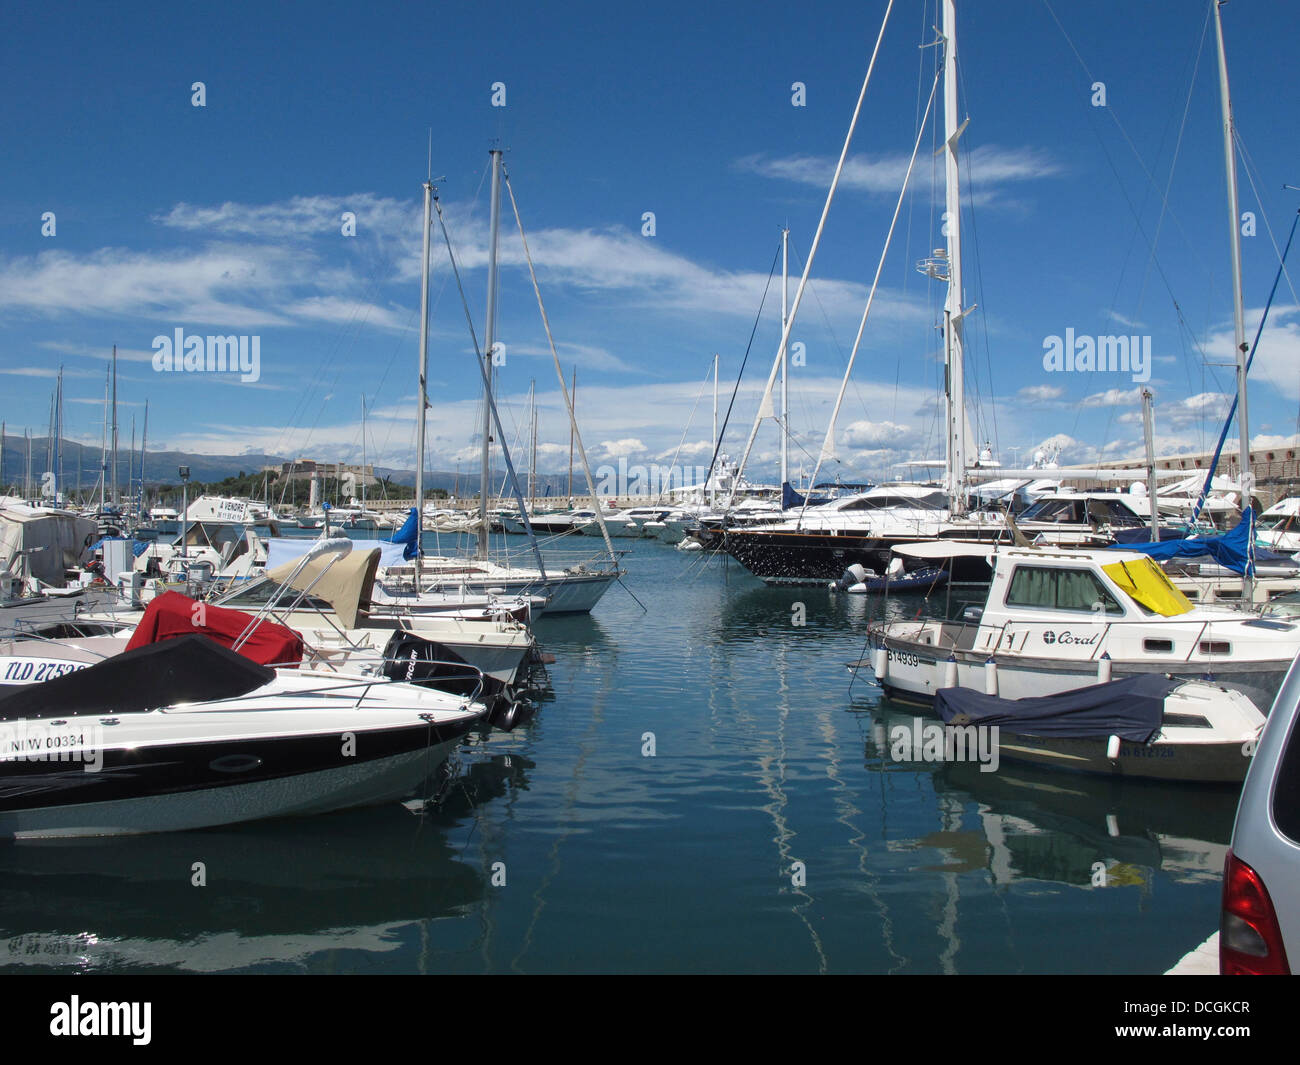 Antibes port vauban hi-res stock photography and images - Alamy